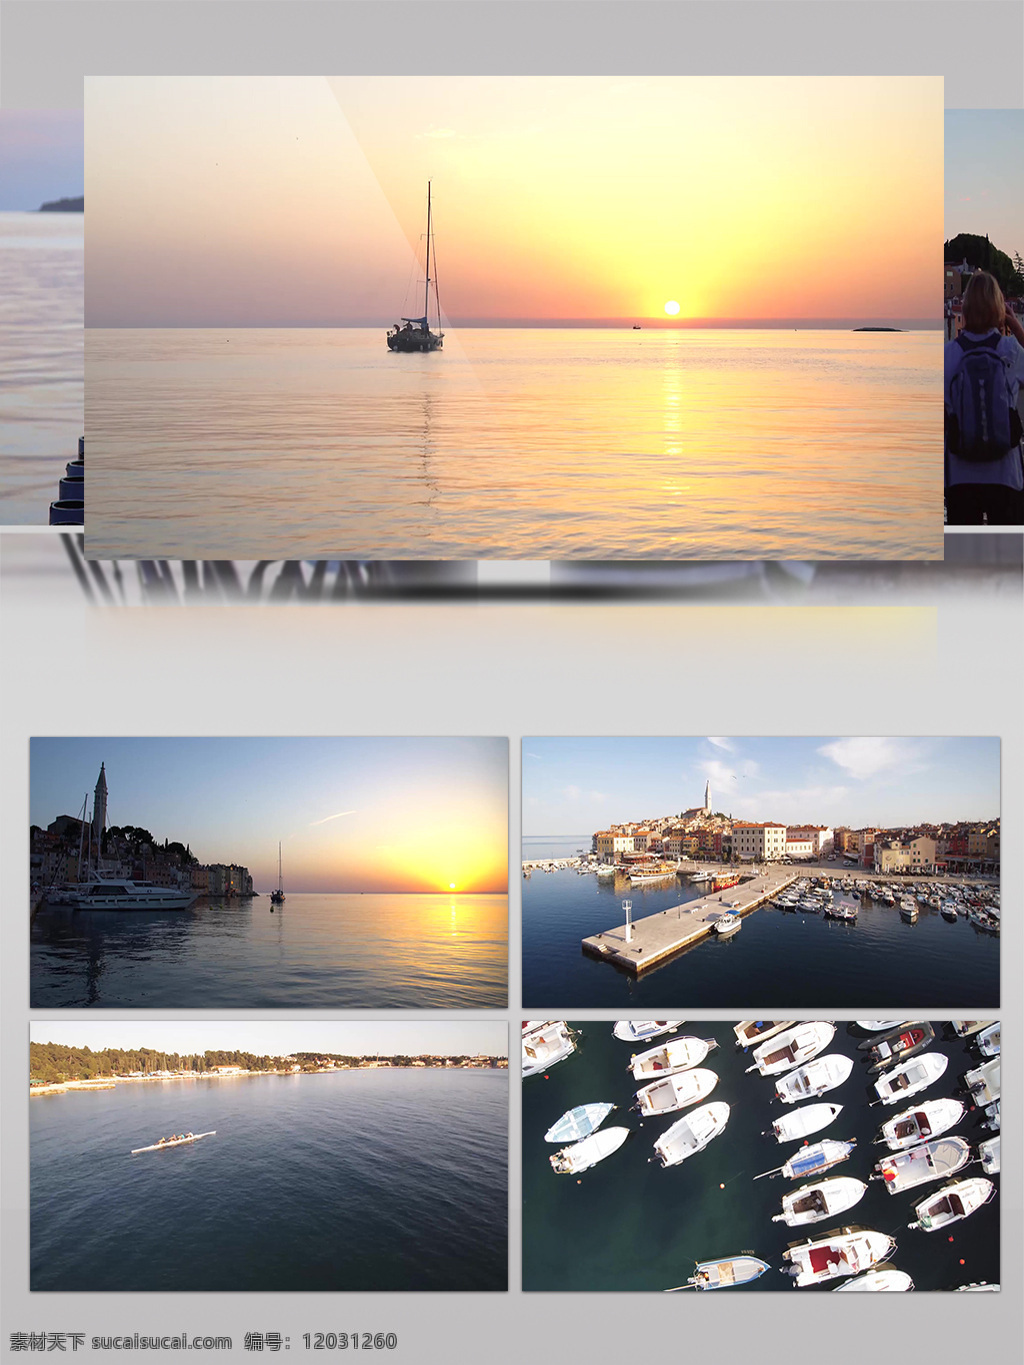 4k 克罗地亚 唯美 旅游风光 展示 旅游 游艇 夕阳 码头 城市景观 游船